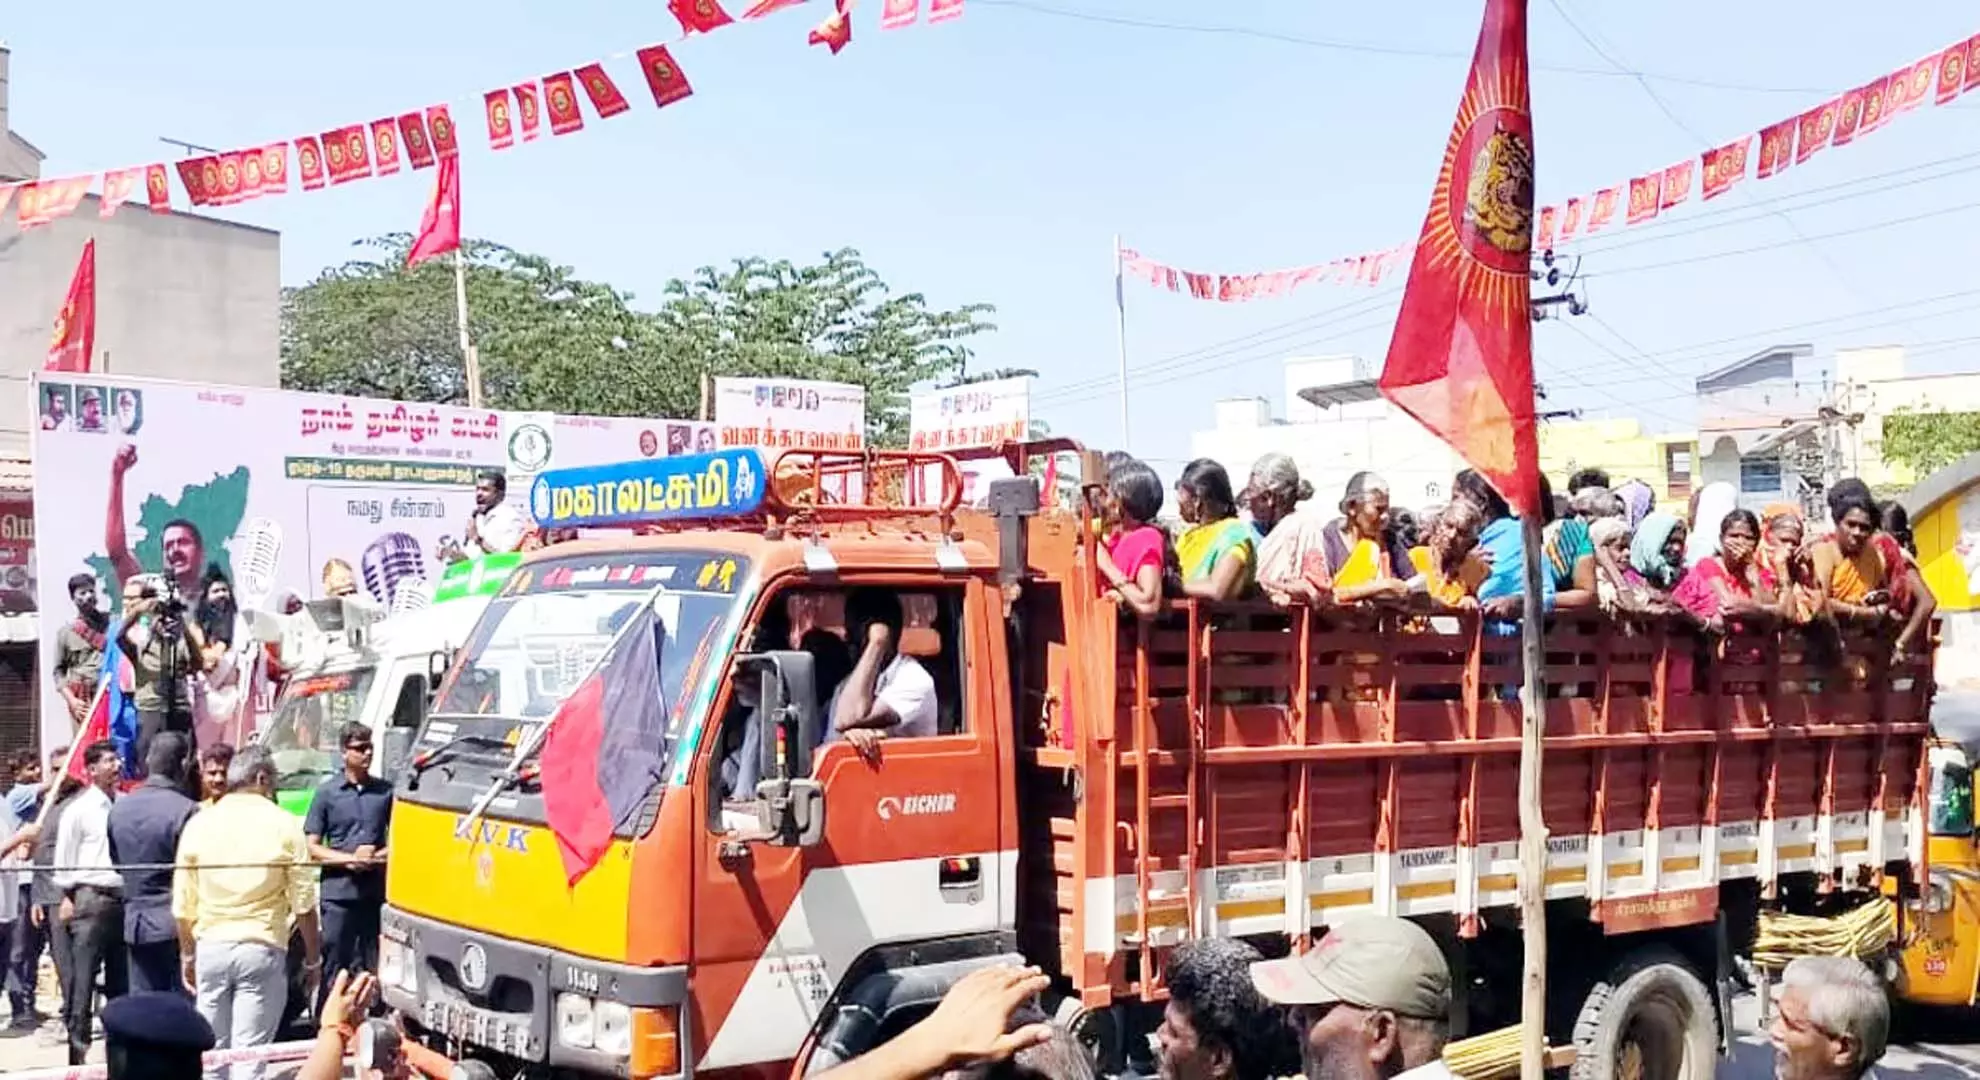 धर्मपुरी में मालवाहक वाहनों में लोगों को ले जाना बेरोकटोक जारी है